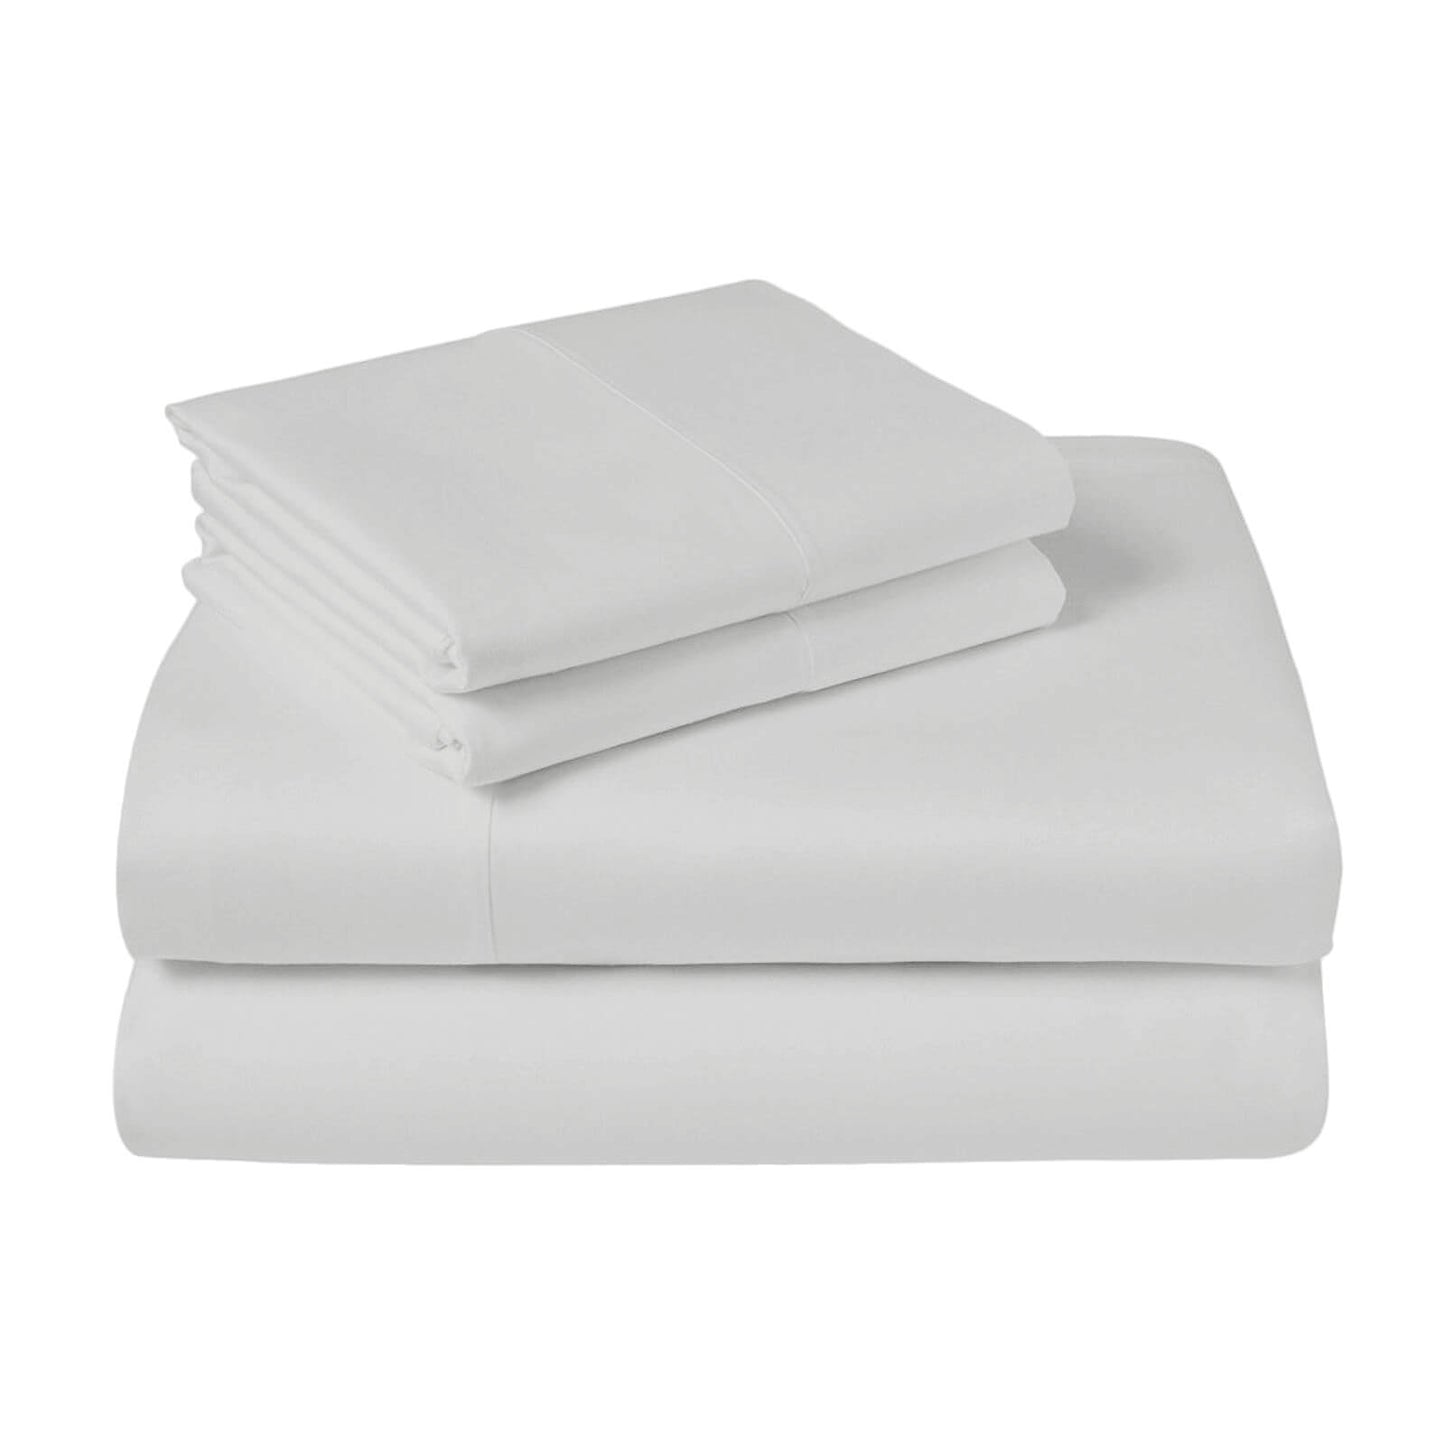 Lavish Touch 100% Cotton Microflannel Queen Sheet Set 4 Pcs - Kea Global